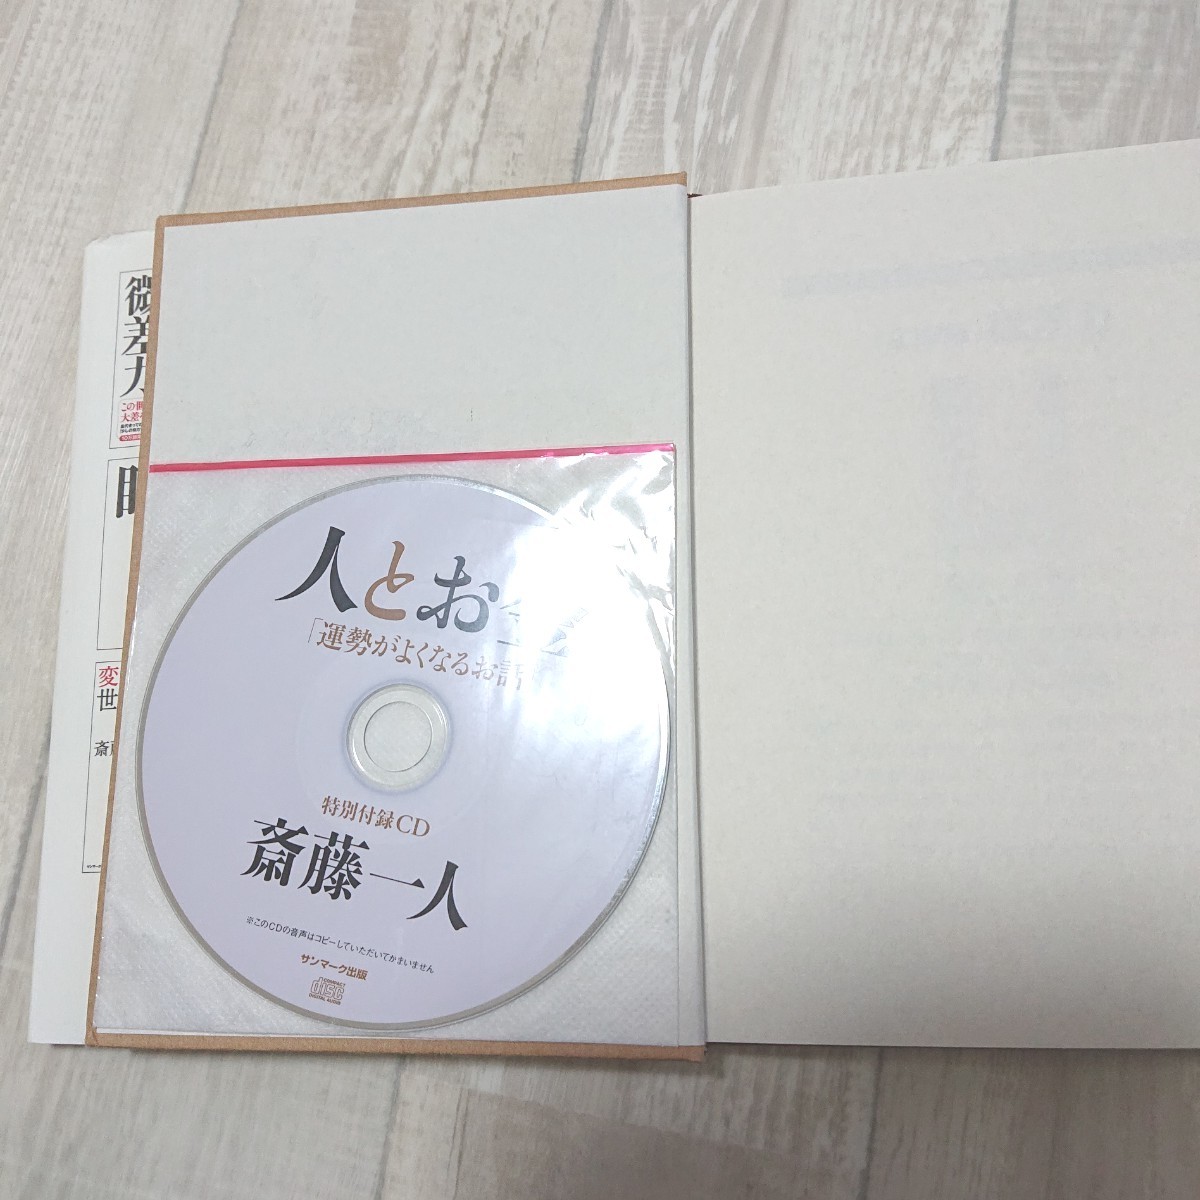 人とお金 斎藤一人 特別付録CD付き  サンマーク出版